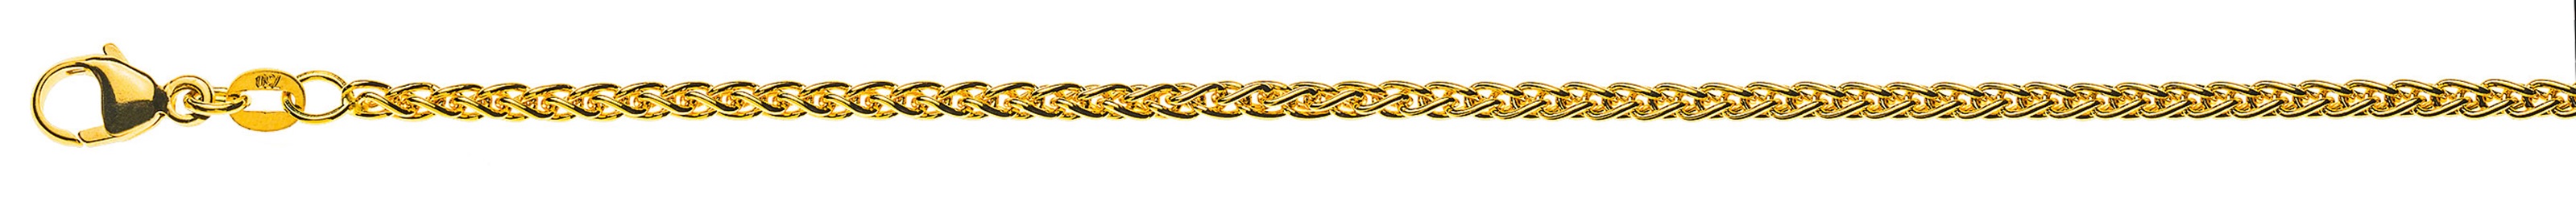 AURONOS Prestige Collier chaîne en or jaune 18K 42cm 2.5mm